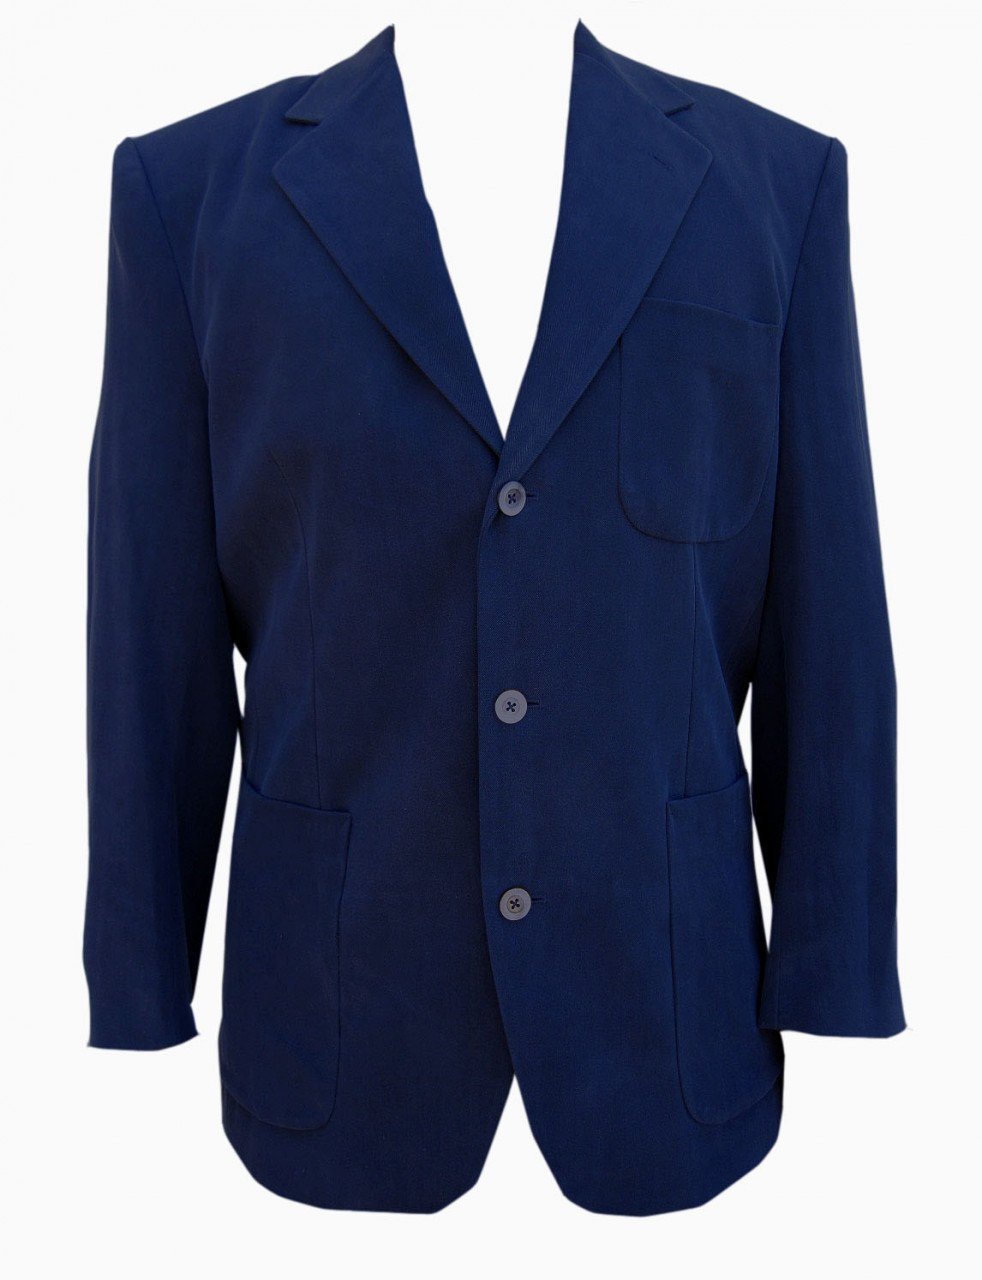 Men's Silk Sport Coat (Ink Blue) - FonteShirts.com